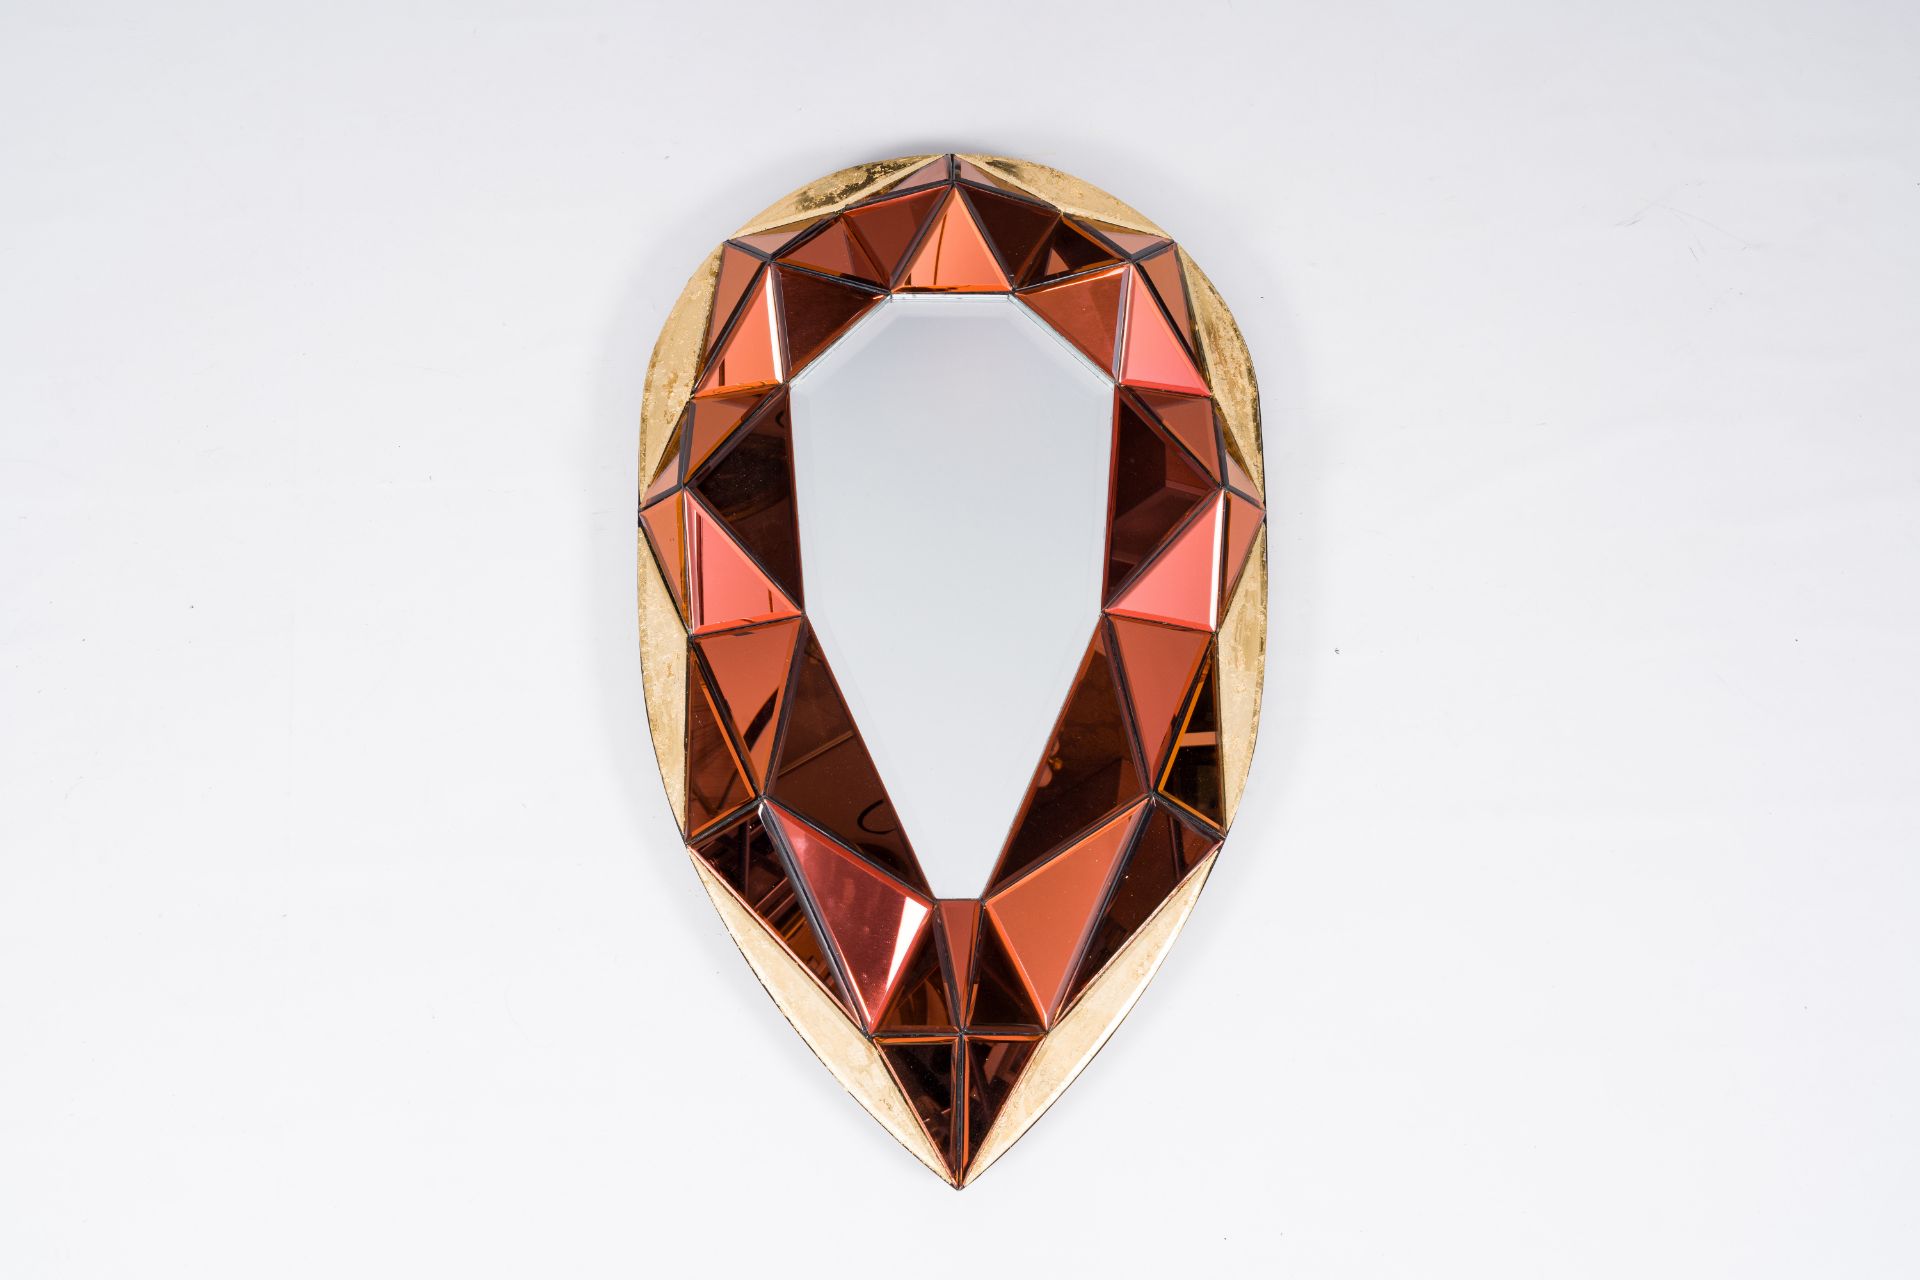 Olivier De Schrijver (1958): A 24 carat gold leaf and velvet finished 'Coeur de feu' mirror, piece u